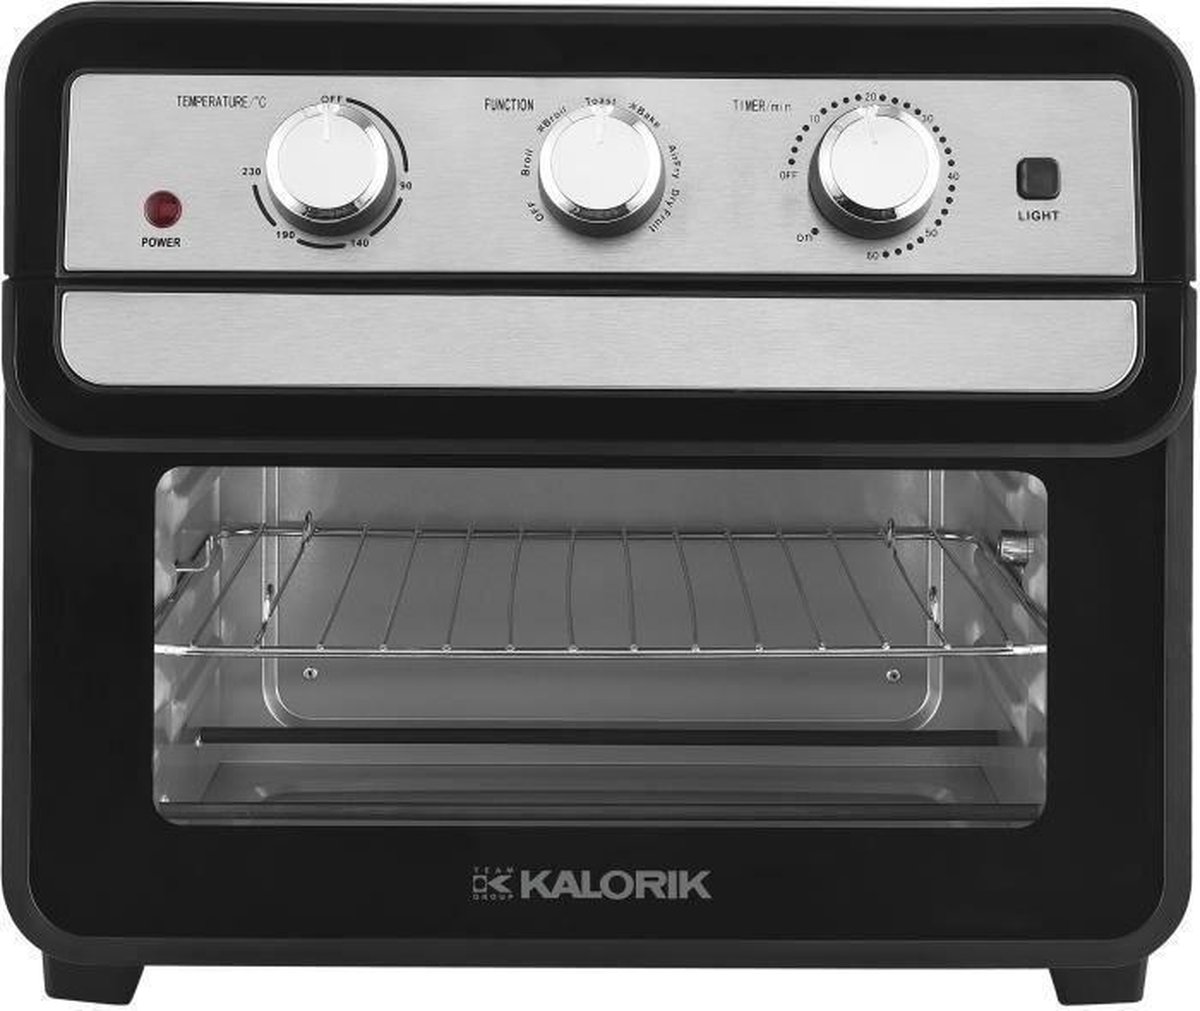 Airfryer-oven - TKG AFO 2000 - multifunctionele 3-in-1-oven - Regelbare thermostaat: 90-230°C - 22 l - 1700 W - Speciale functies: airfryer, rotisserie, convectie en drogen van voedsel